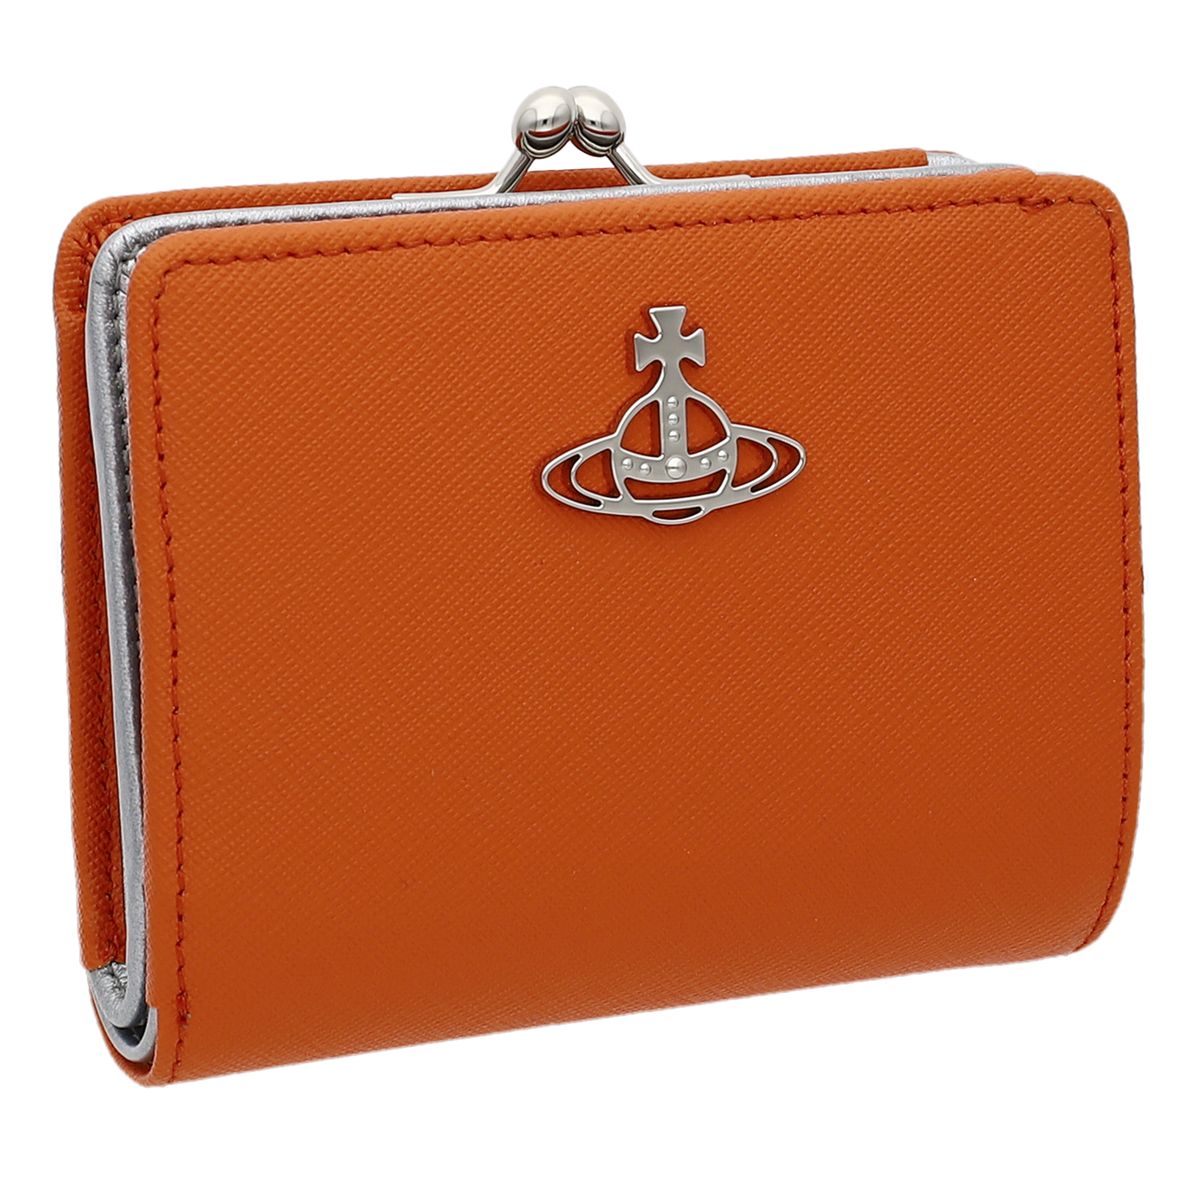 ヴィヴィアンウエストウッド 二つ折り財布（レディース） Vivienne Westwood(ヴィヴィアン・ウエストウッド) レディース 二ツ折リ財布 オレンジ 51010020